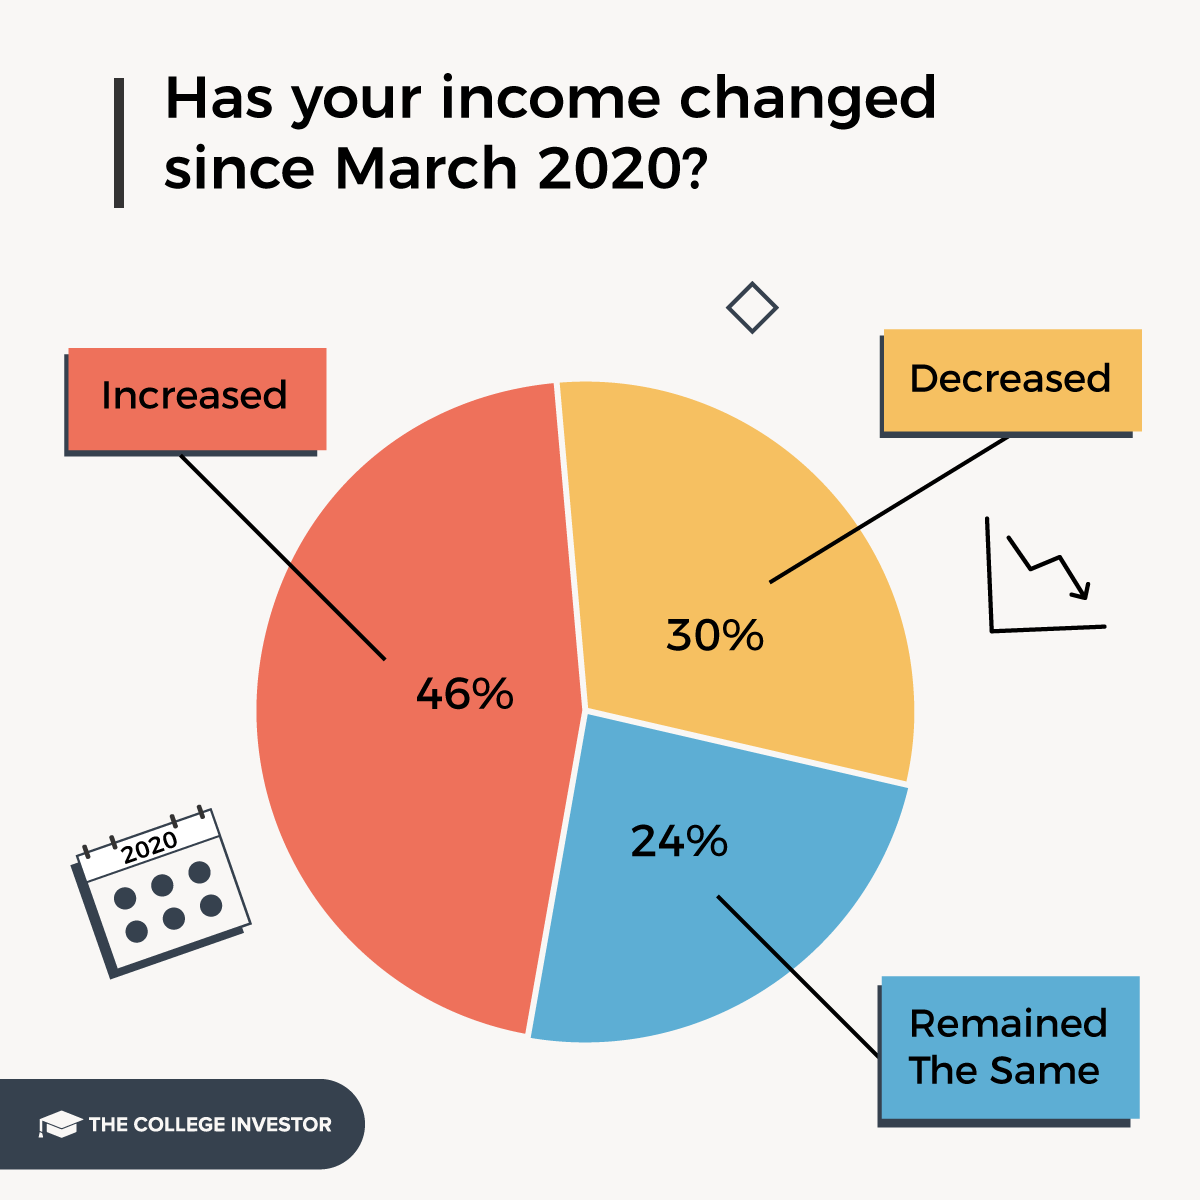 La mayoría de los estudiantes prestatarios no han visto aumentar sus ingresos desde marzo de 2020